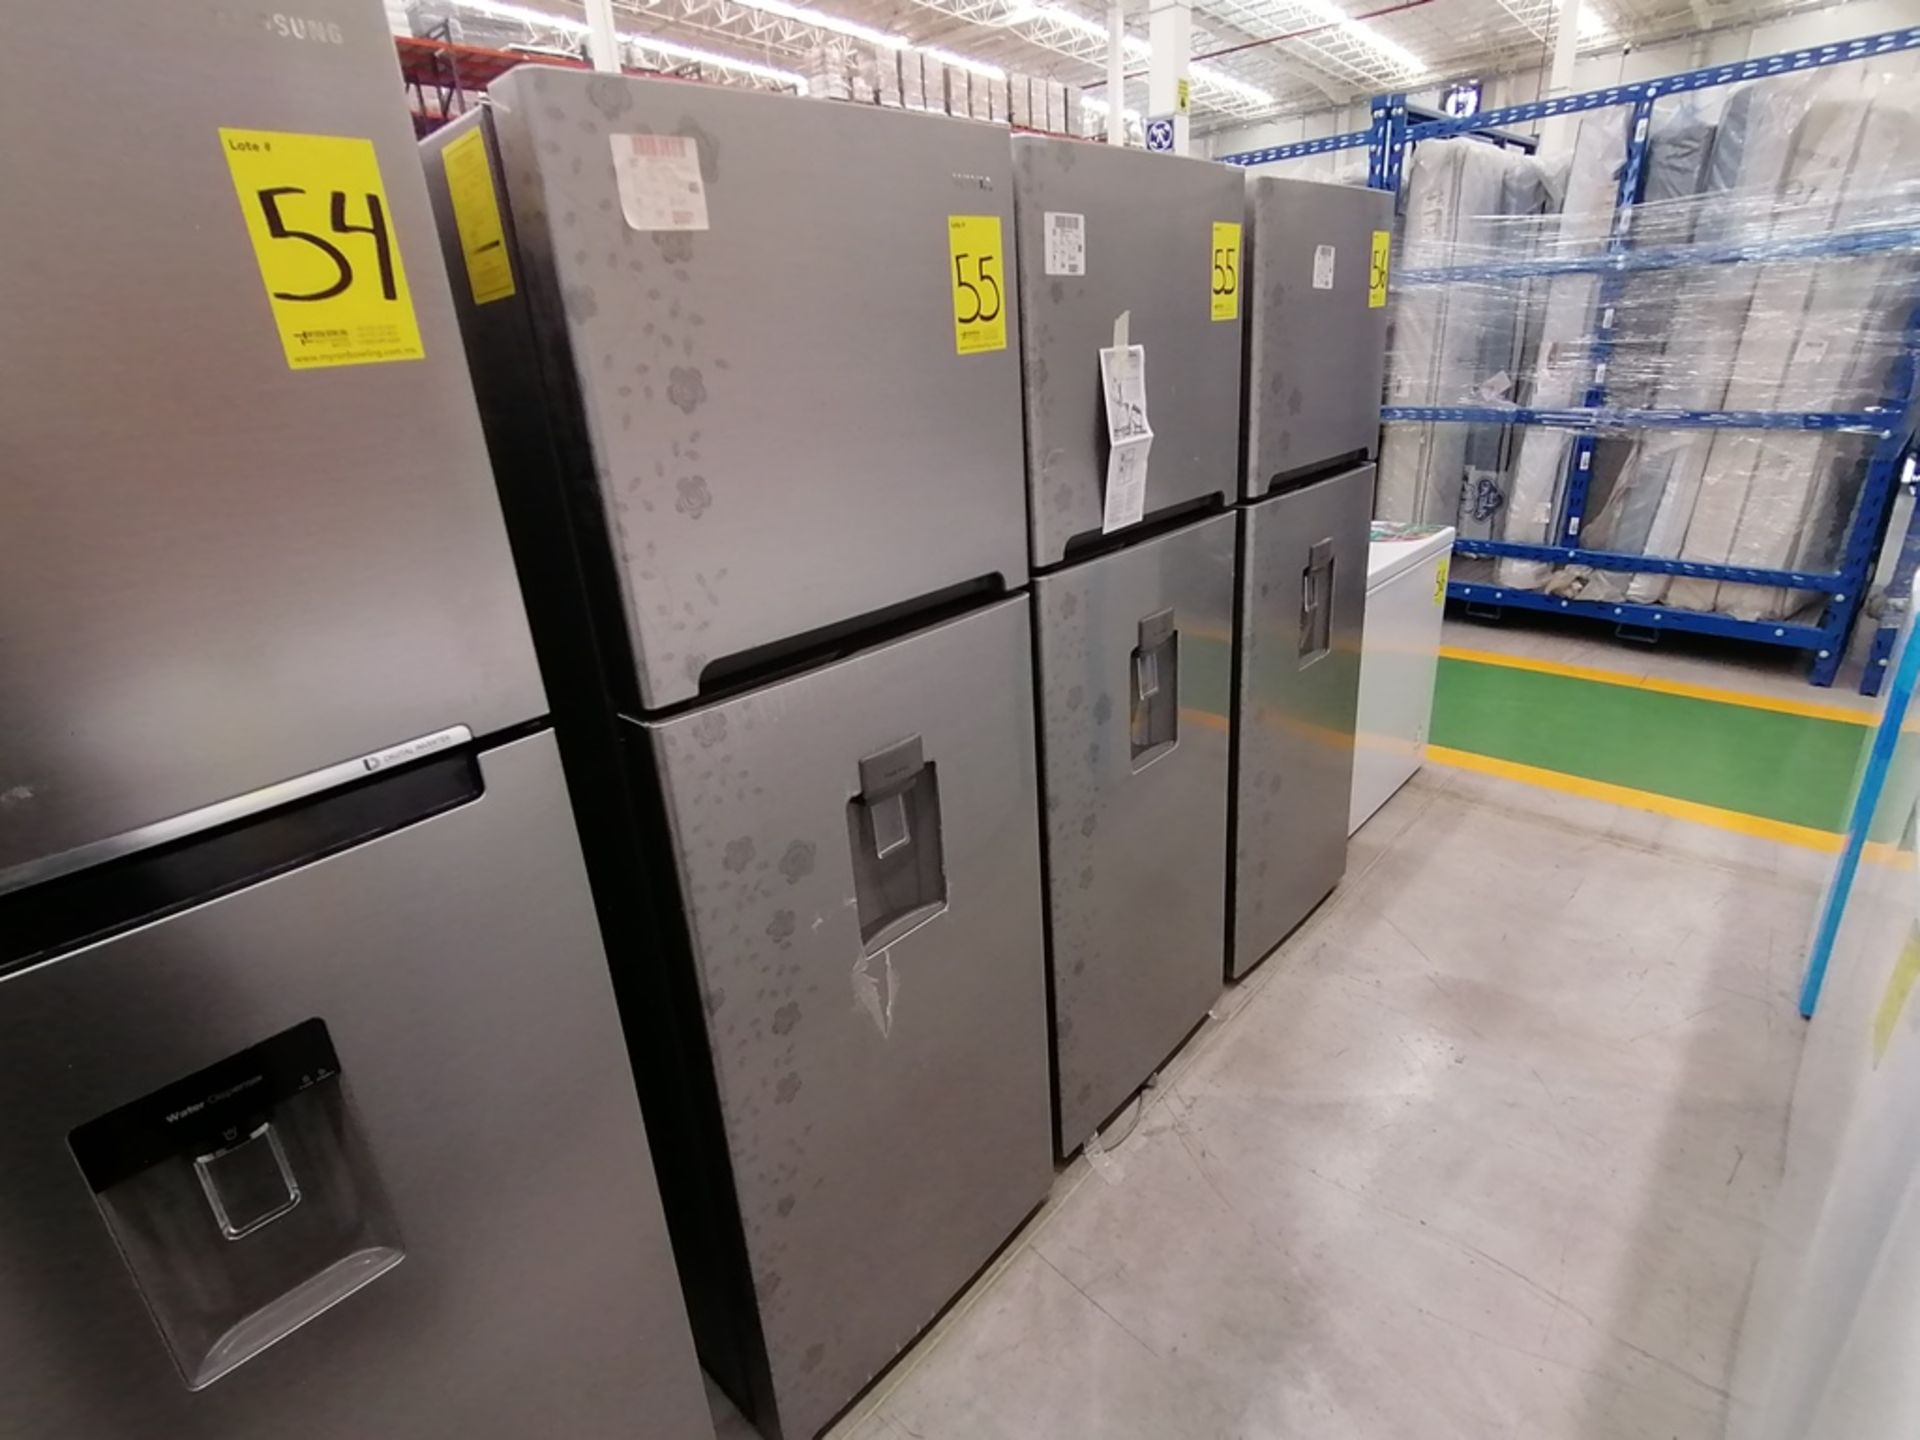 Lote de 2 refrigeradores incluye: 1 Refrigerador con dispensador de agua, Marca Winia, Modelo DFR40 - Image 9 of 15